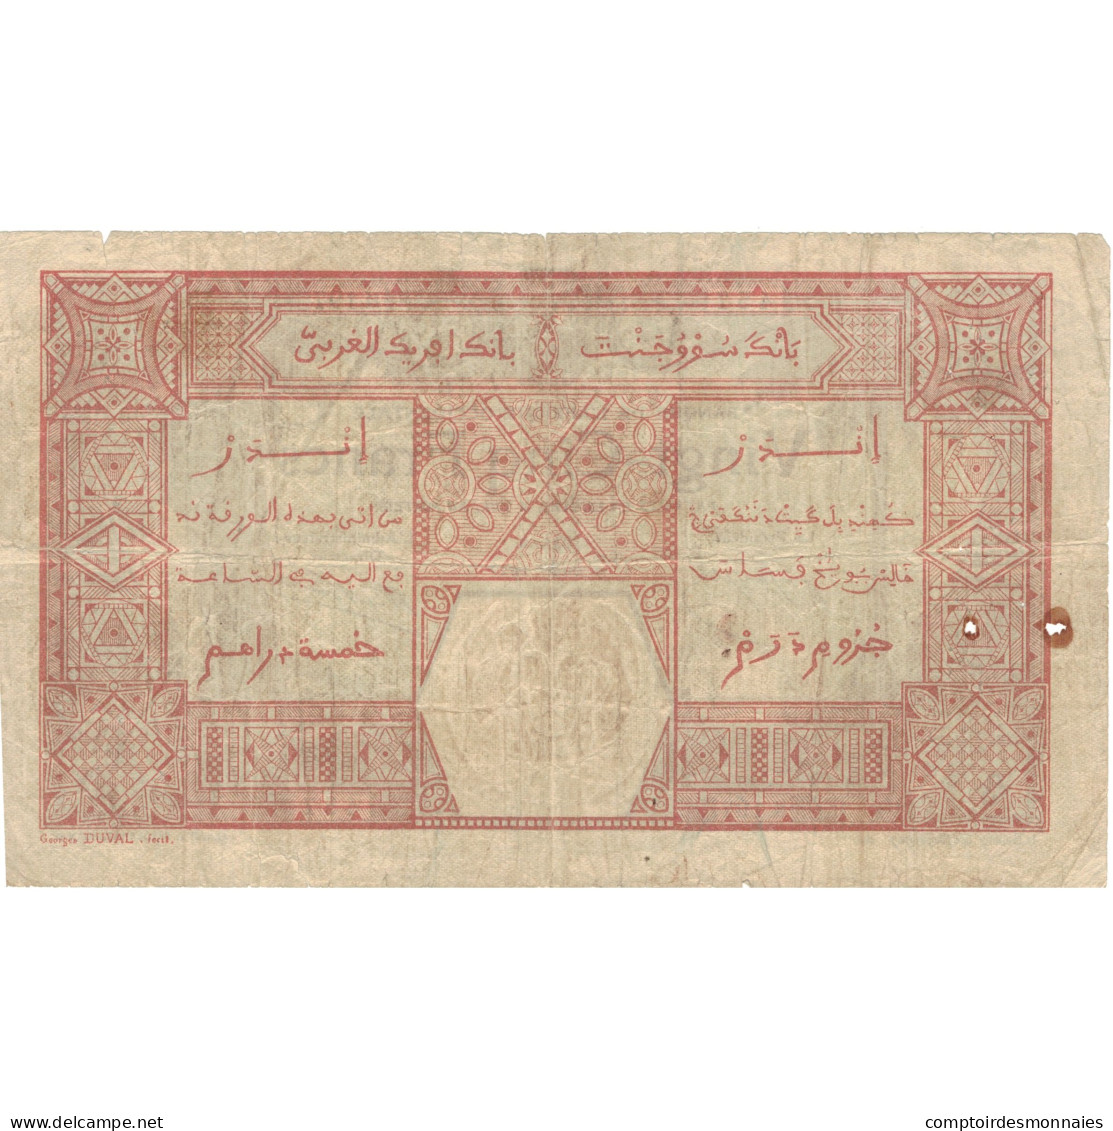 Billet, French West Africa, 25 Francs, 1925, 1925-07-09, KM:7Ba, TTB - États D'Afrique De L'Ouest